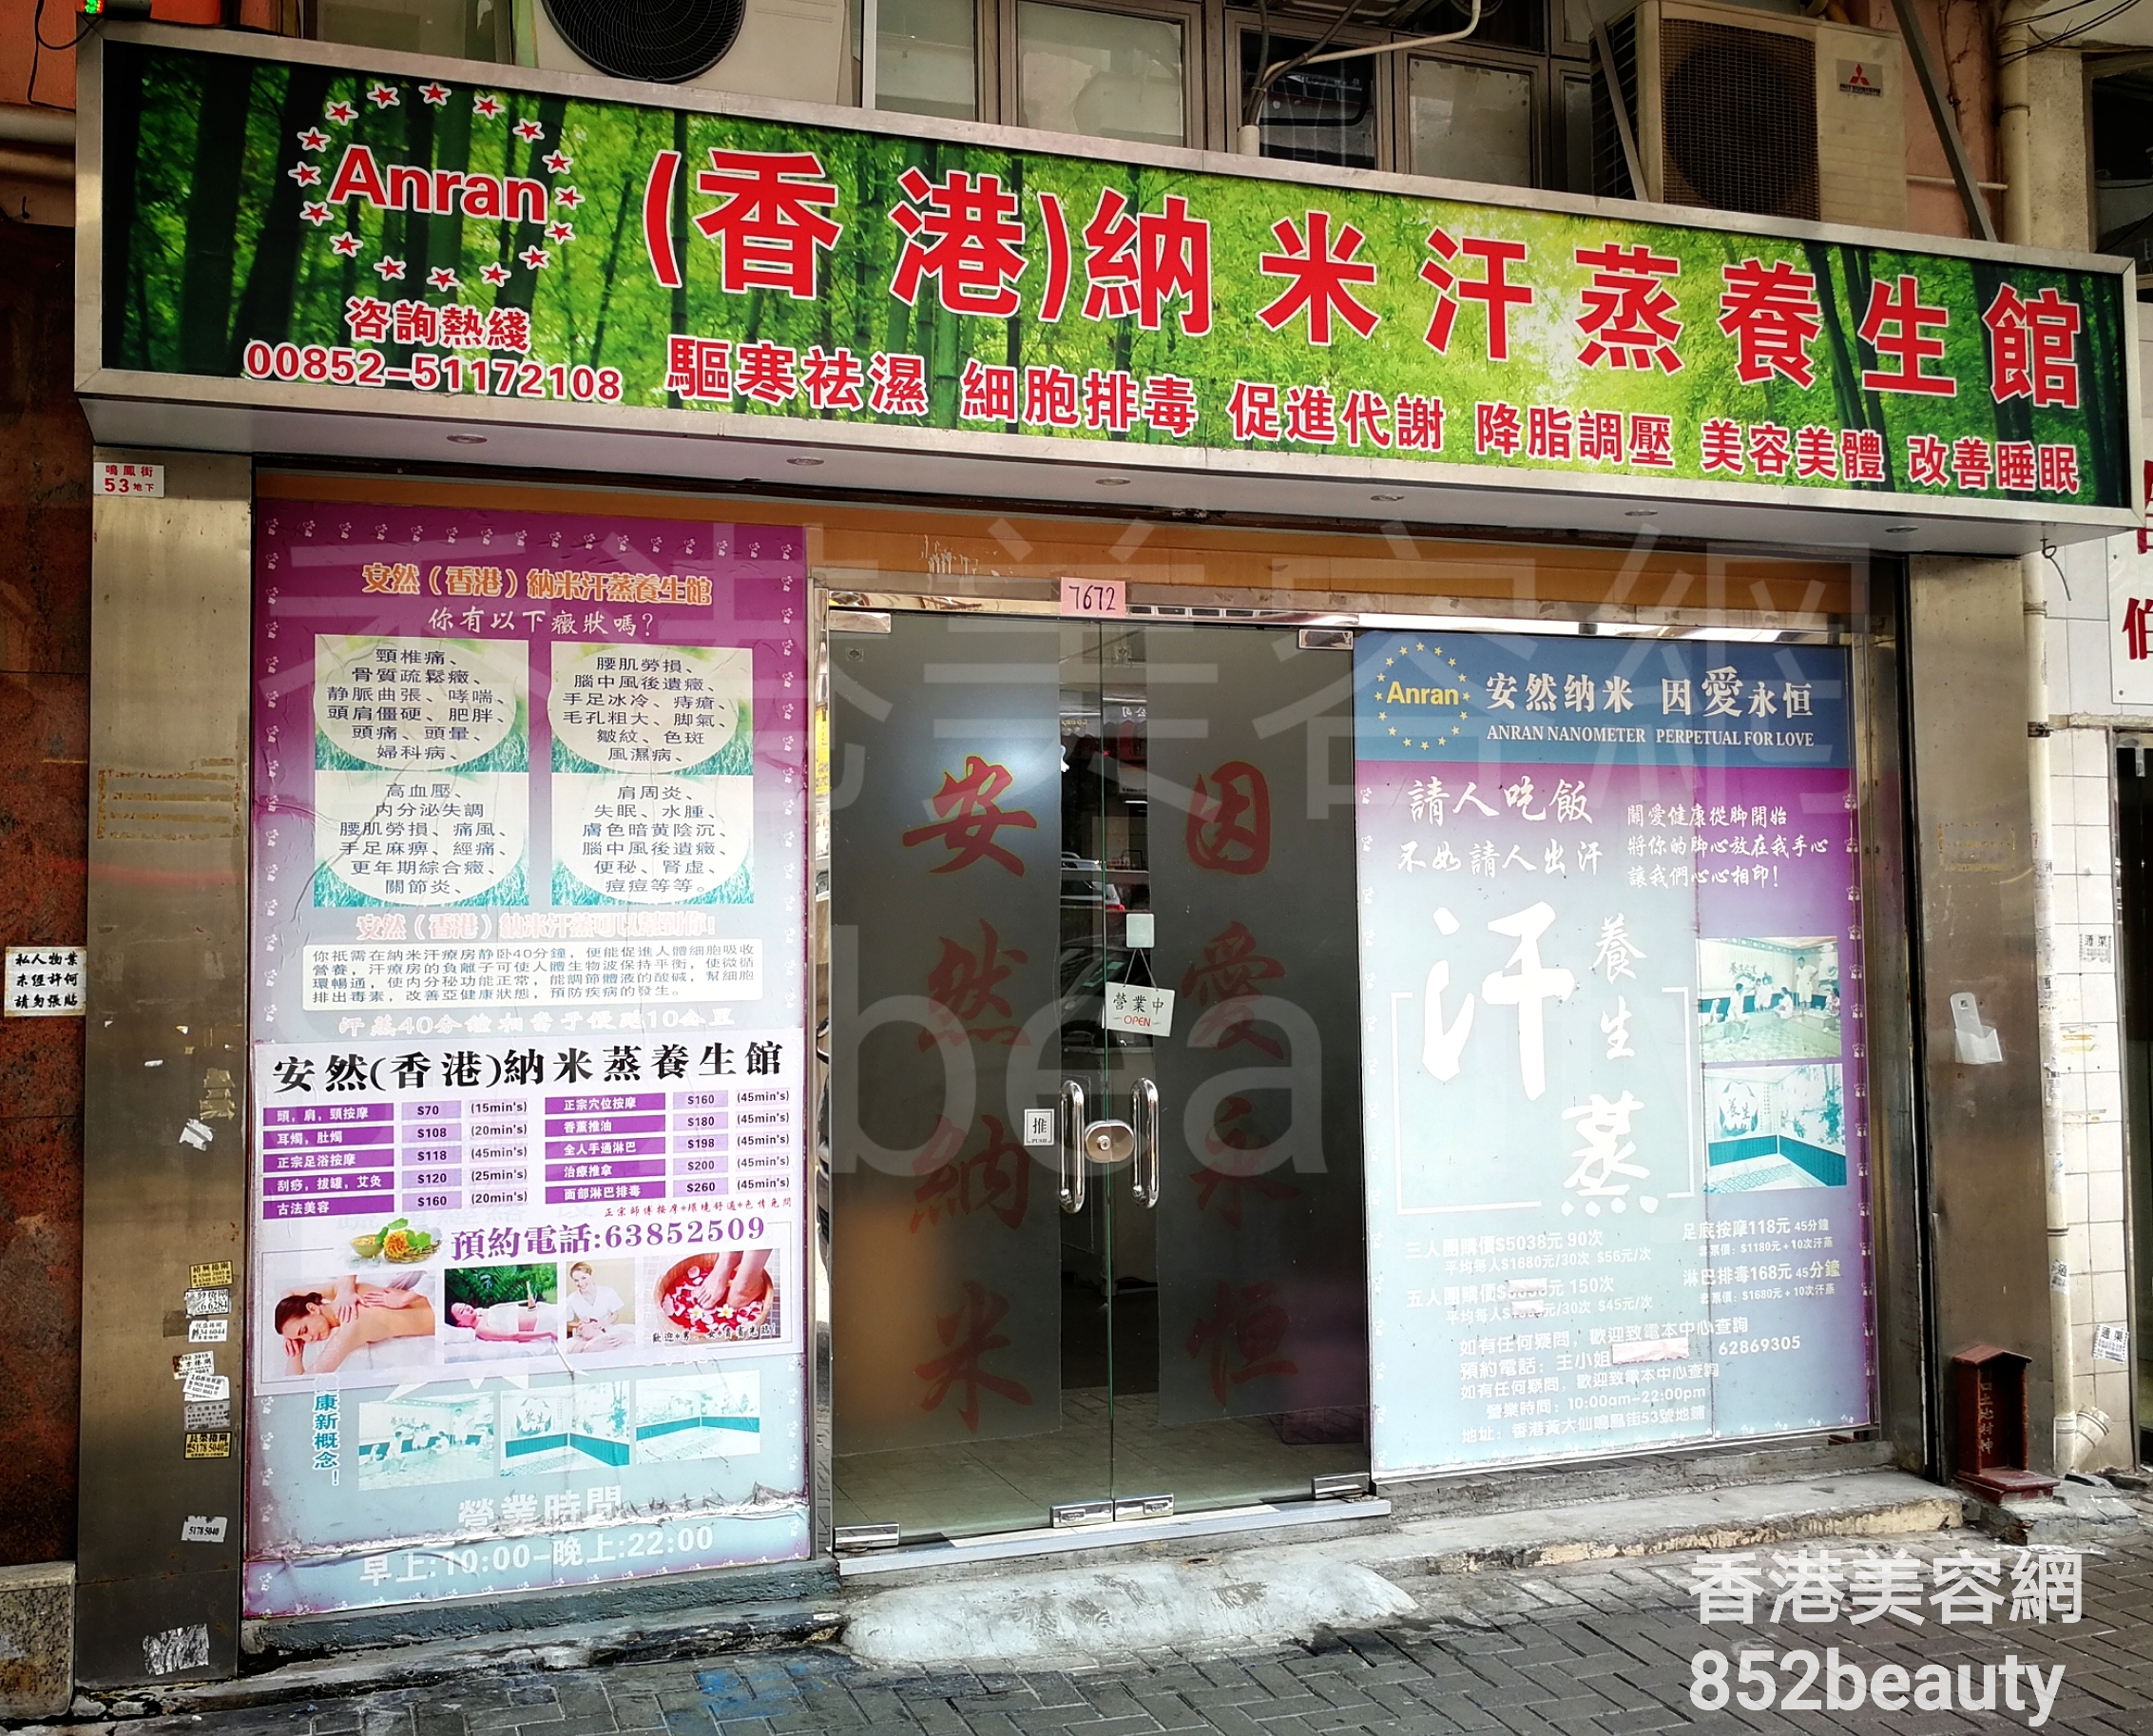 面部护理: (香港)納米汗蒸養生館